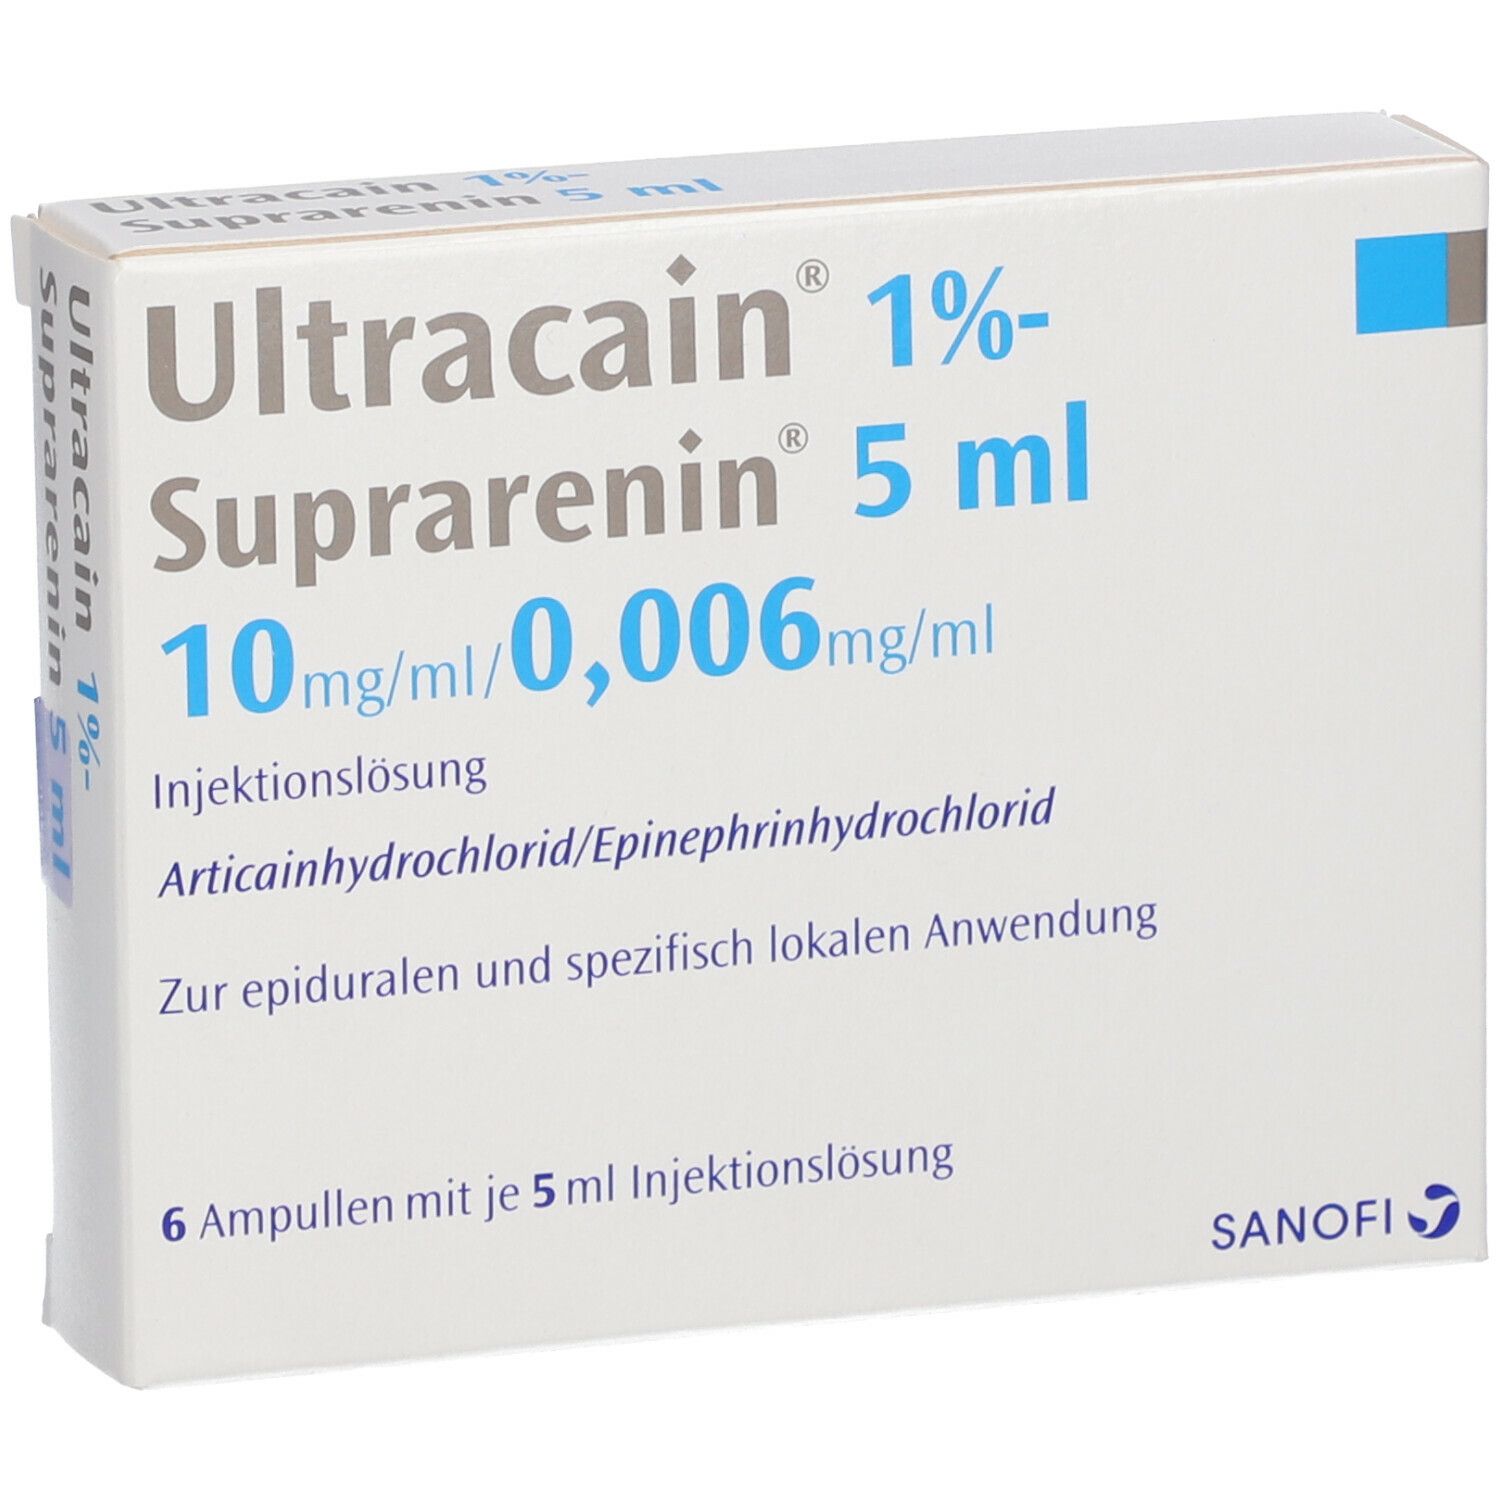 Ultracain® 1% -Suprarenin® 5 ml